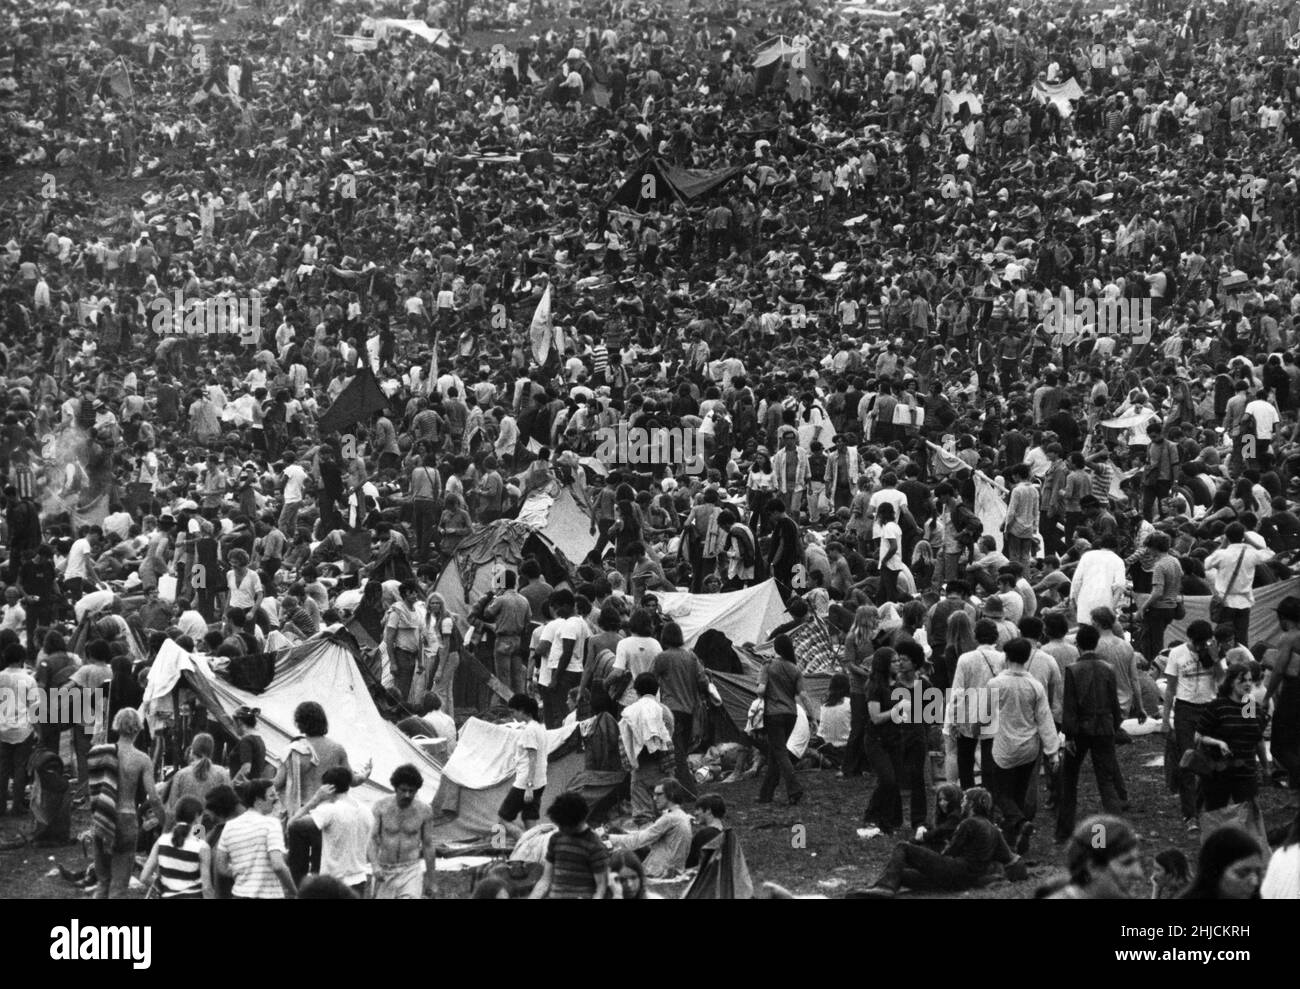 Le Woodstock Music and Art Festival, un célèbre festival de rock qui a eu lieu dans une ferme laitière de Bethel, New York, du 15 au 17 août 1969. Banque D'Images